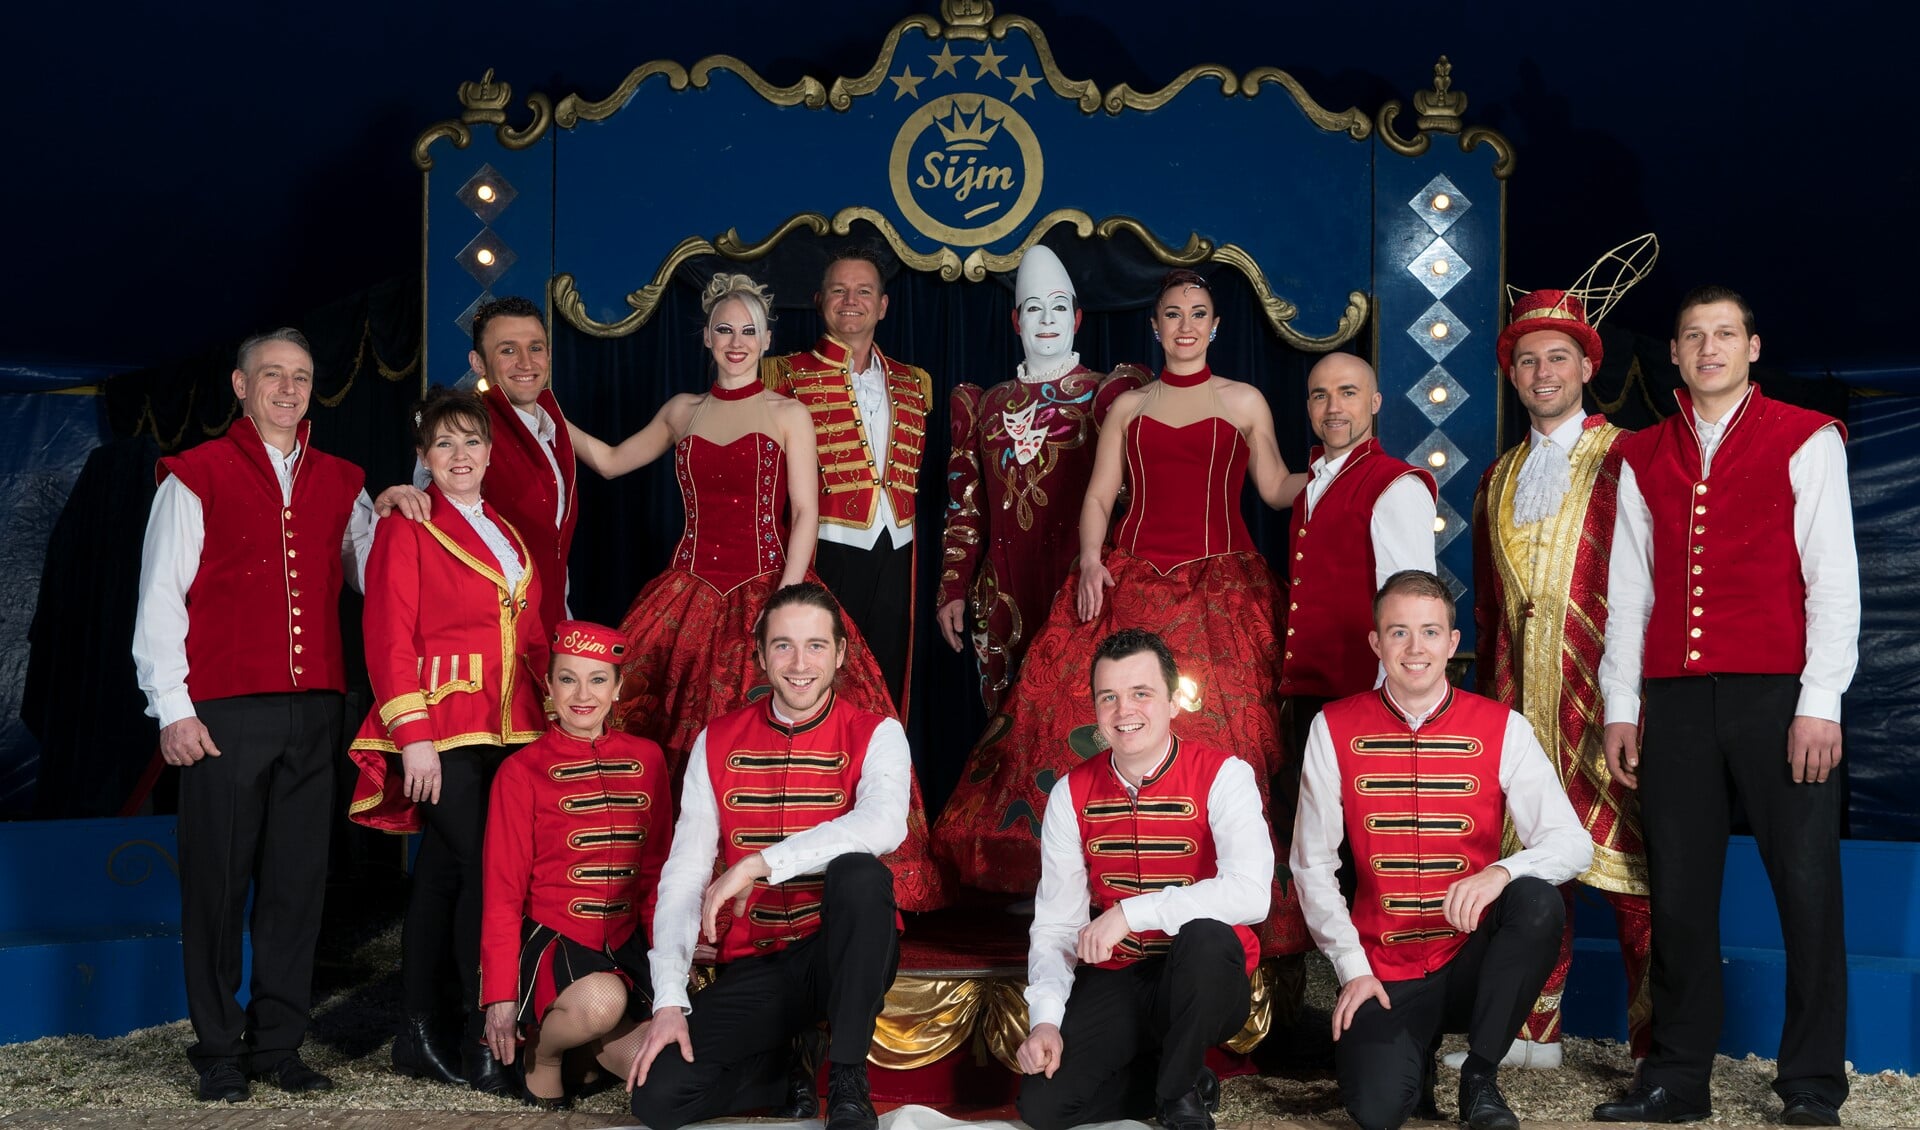 De crew van Circus Sijm komt binnenkort naar Huizen voor diverse voorstellingen.